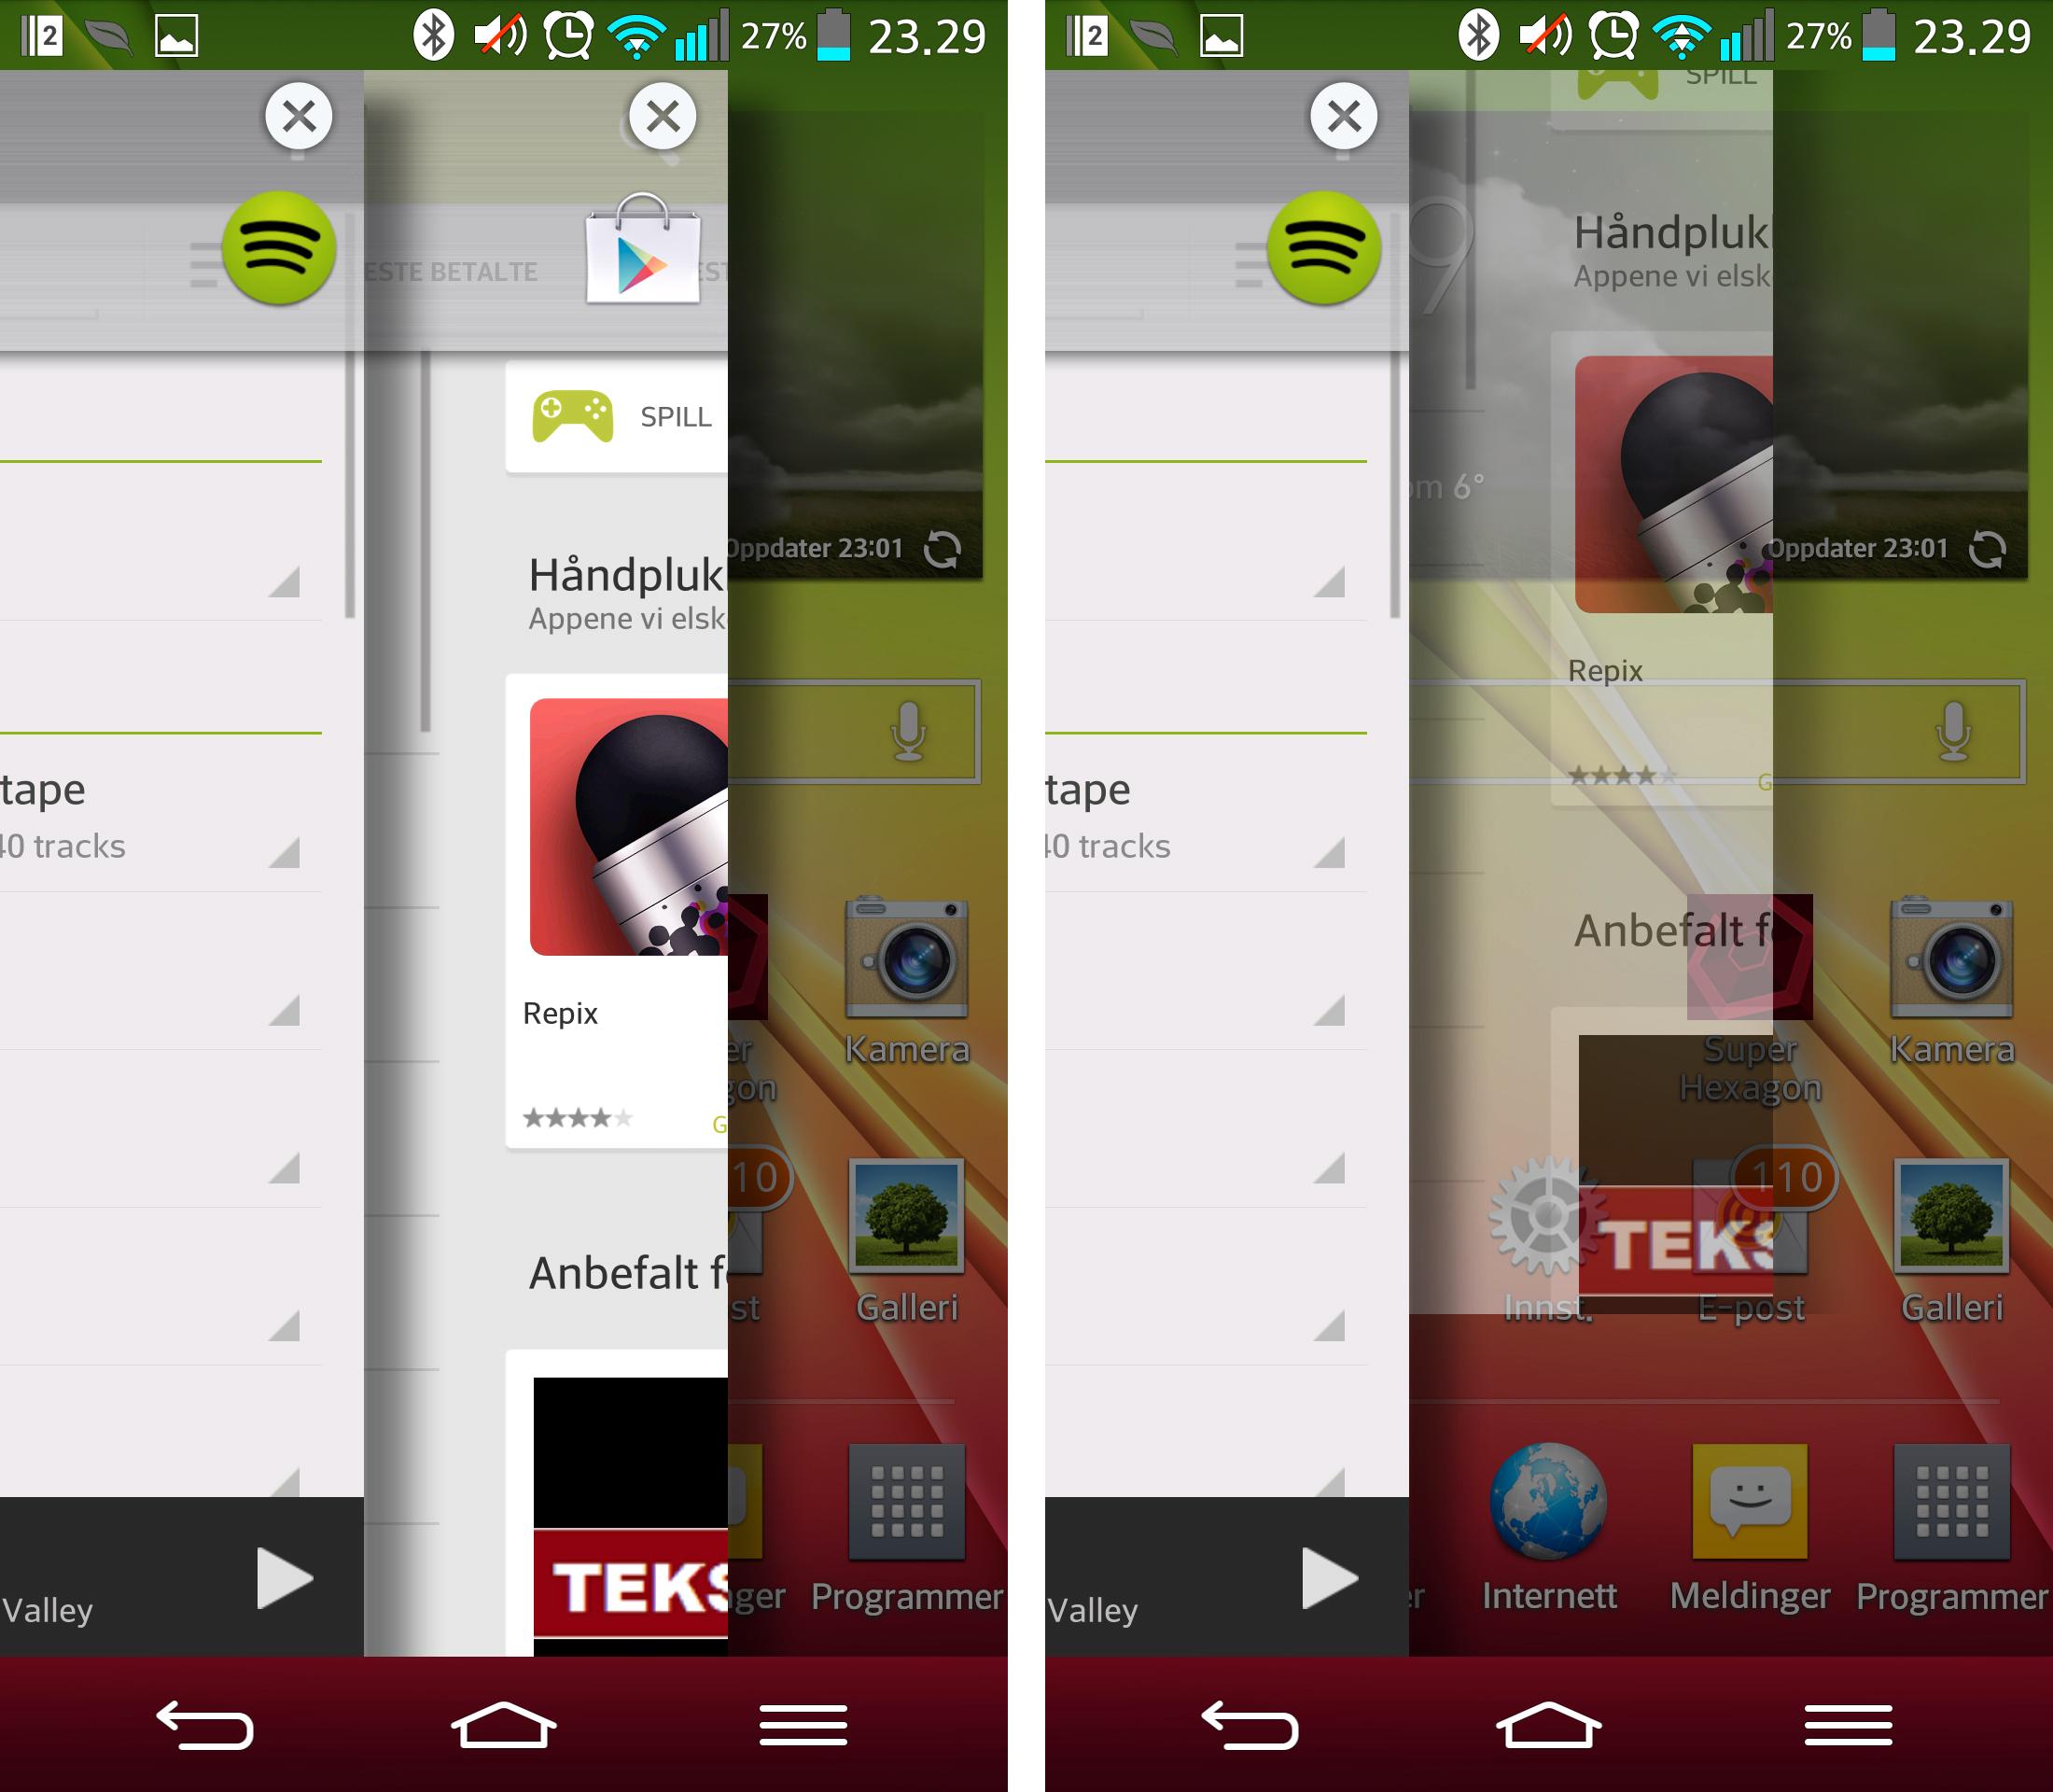 Alle Android-mobiler har fleroppgavekjøring. LG G2 har i tillegg Q-Slide. Vi er ikke overbevise om nytteverdien, men registrerer at apper starter fortere etter å ha ligget i Q-Slide-skuffen.Foto: Finn Jarle Kvalheim, Mobilen.no